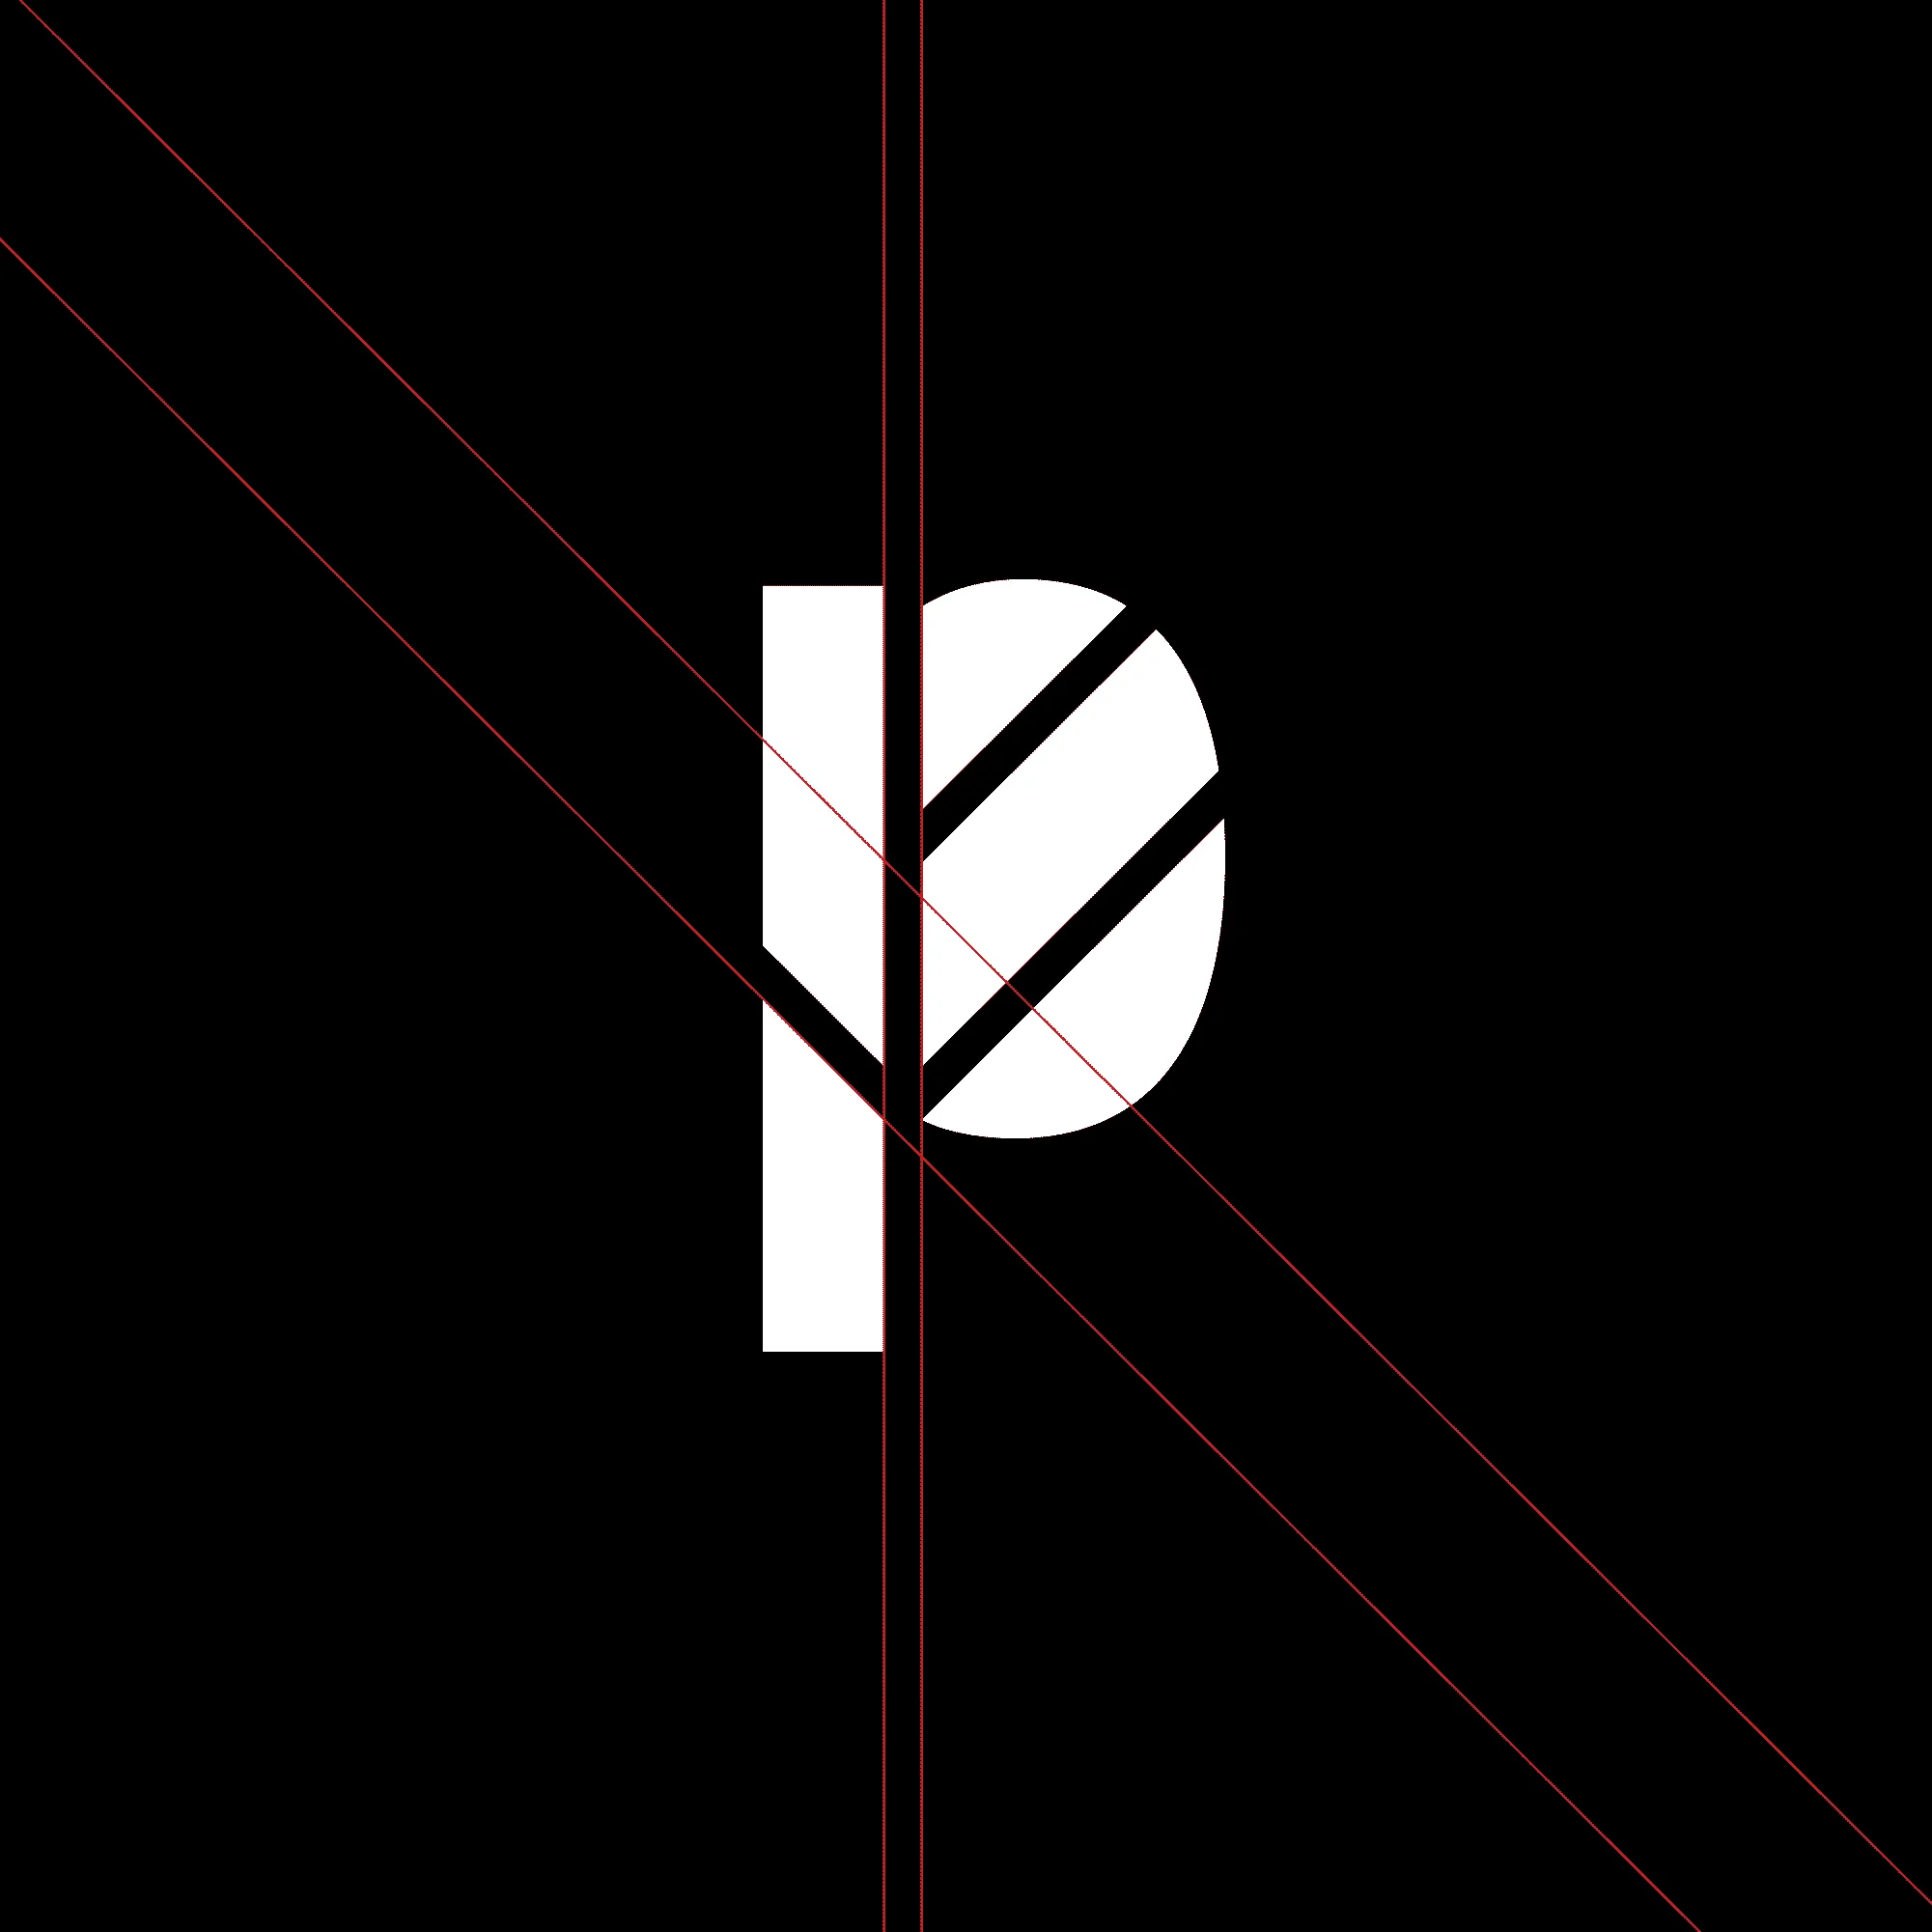 Branding logo design lettering "P" with a leaf shape, grid